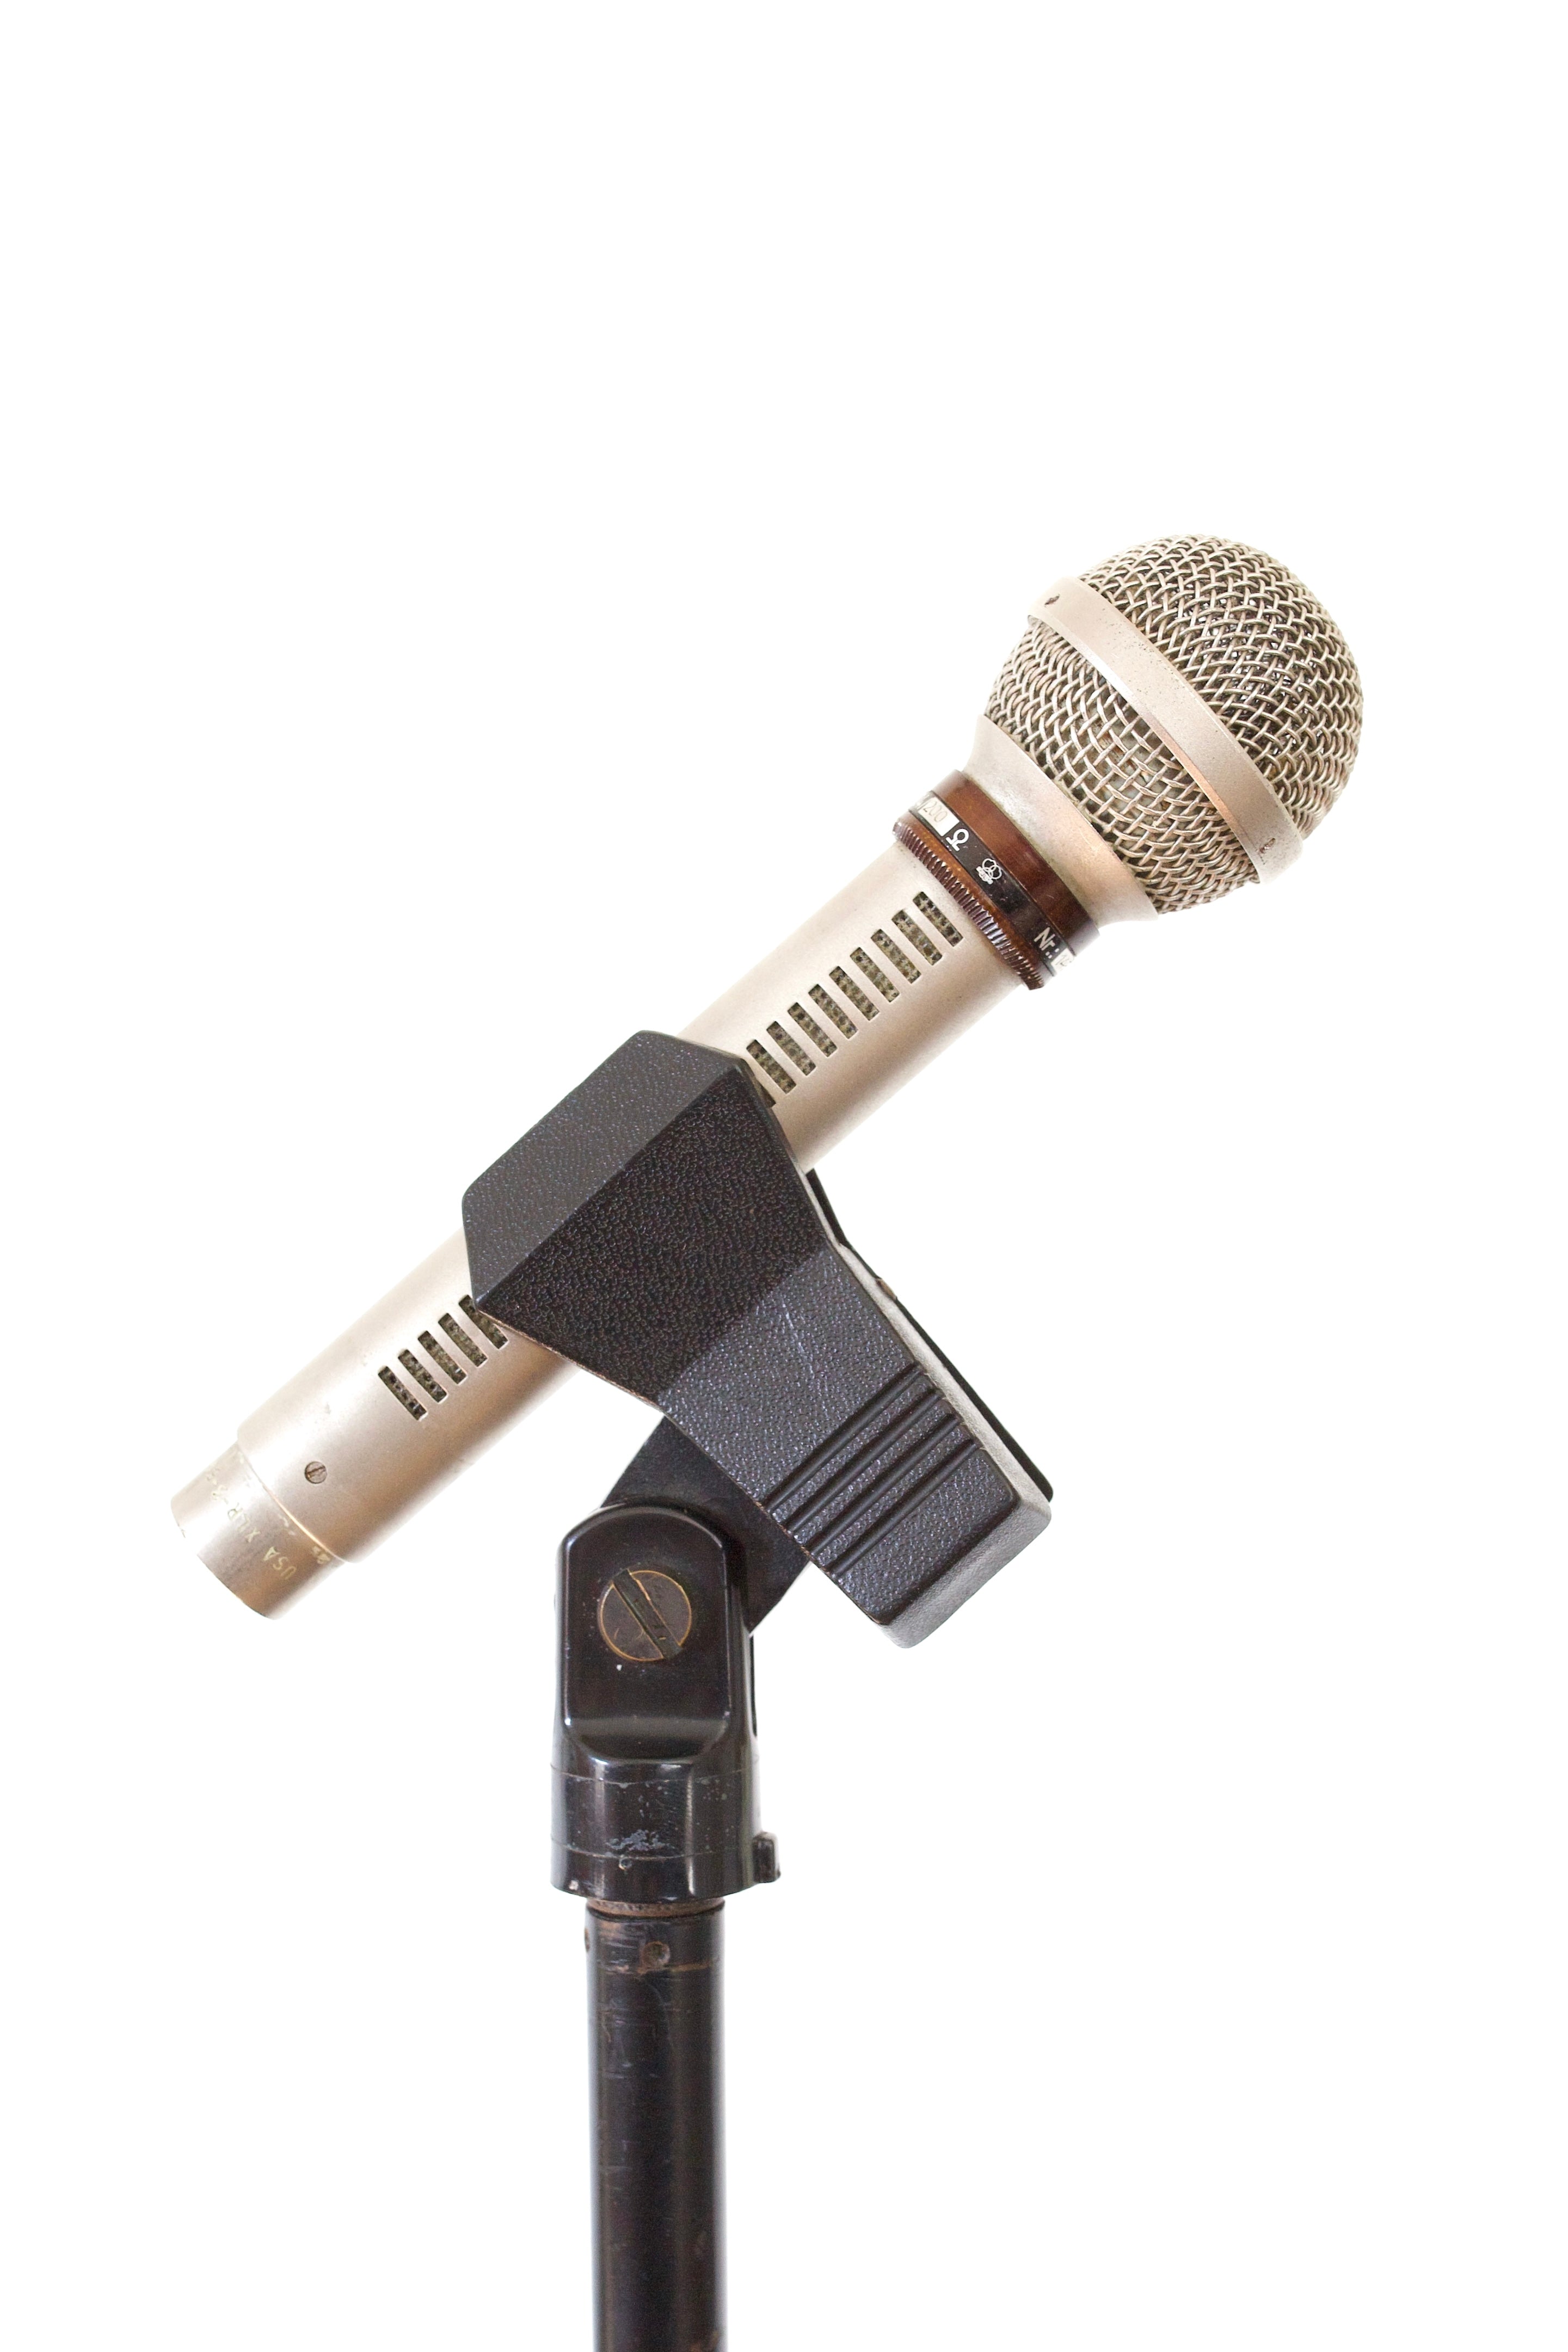 AKG D24 Dynamic Microphone